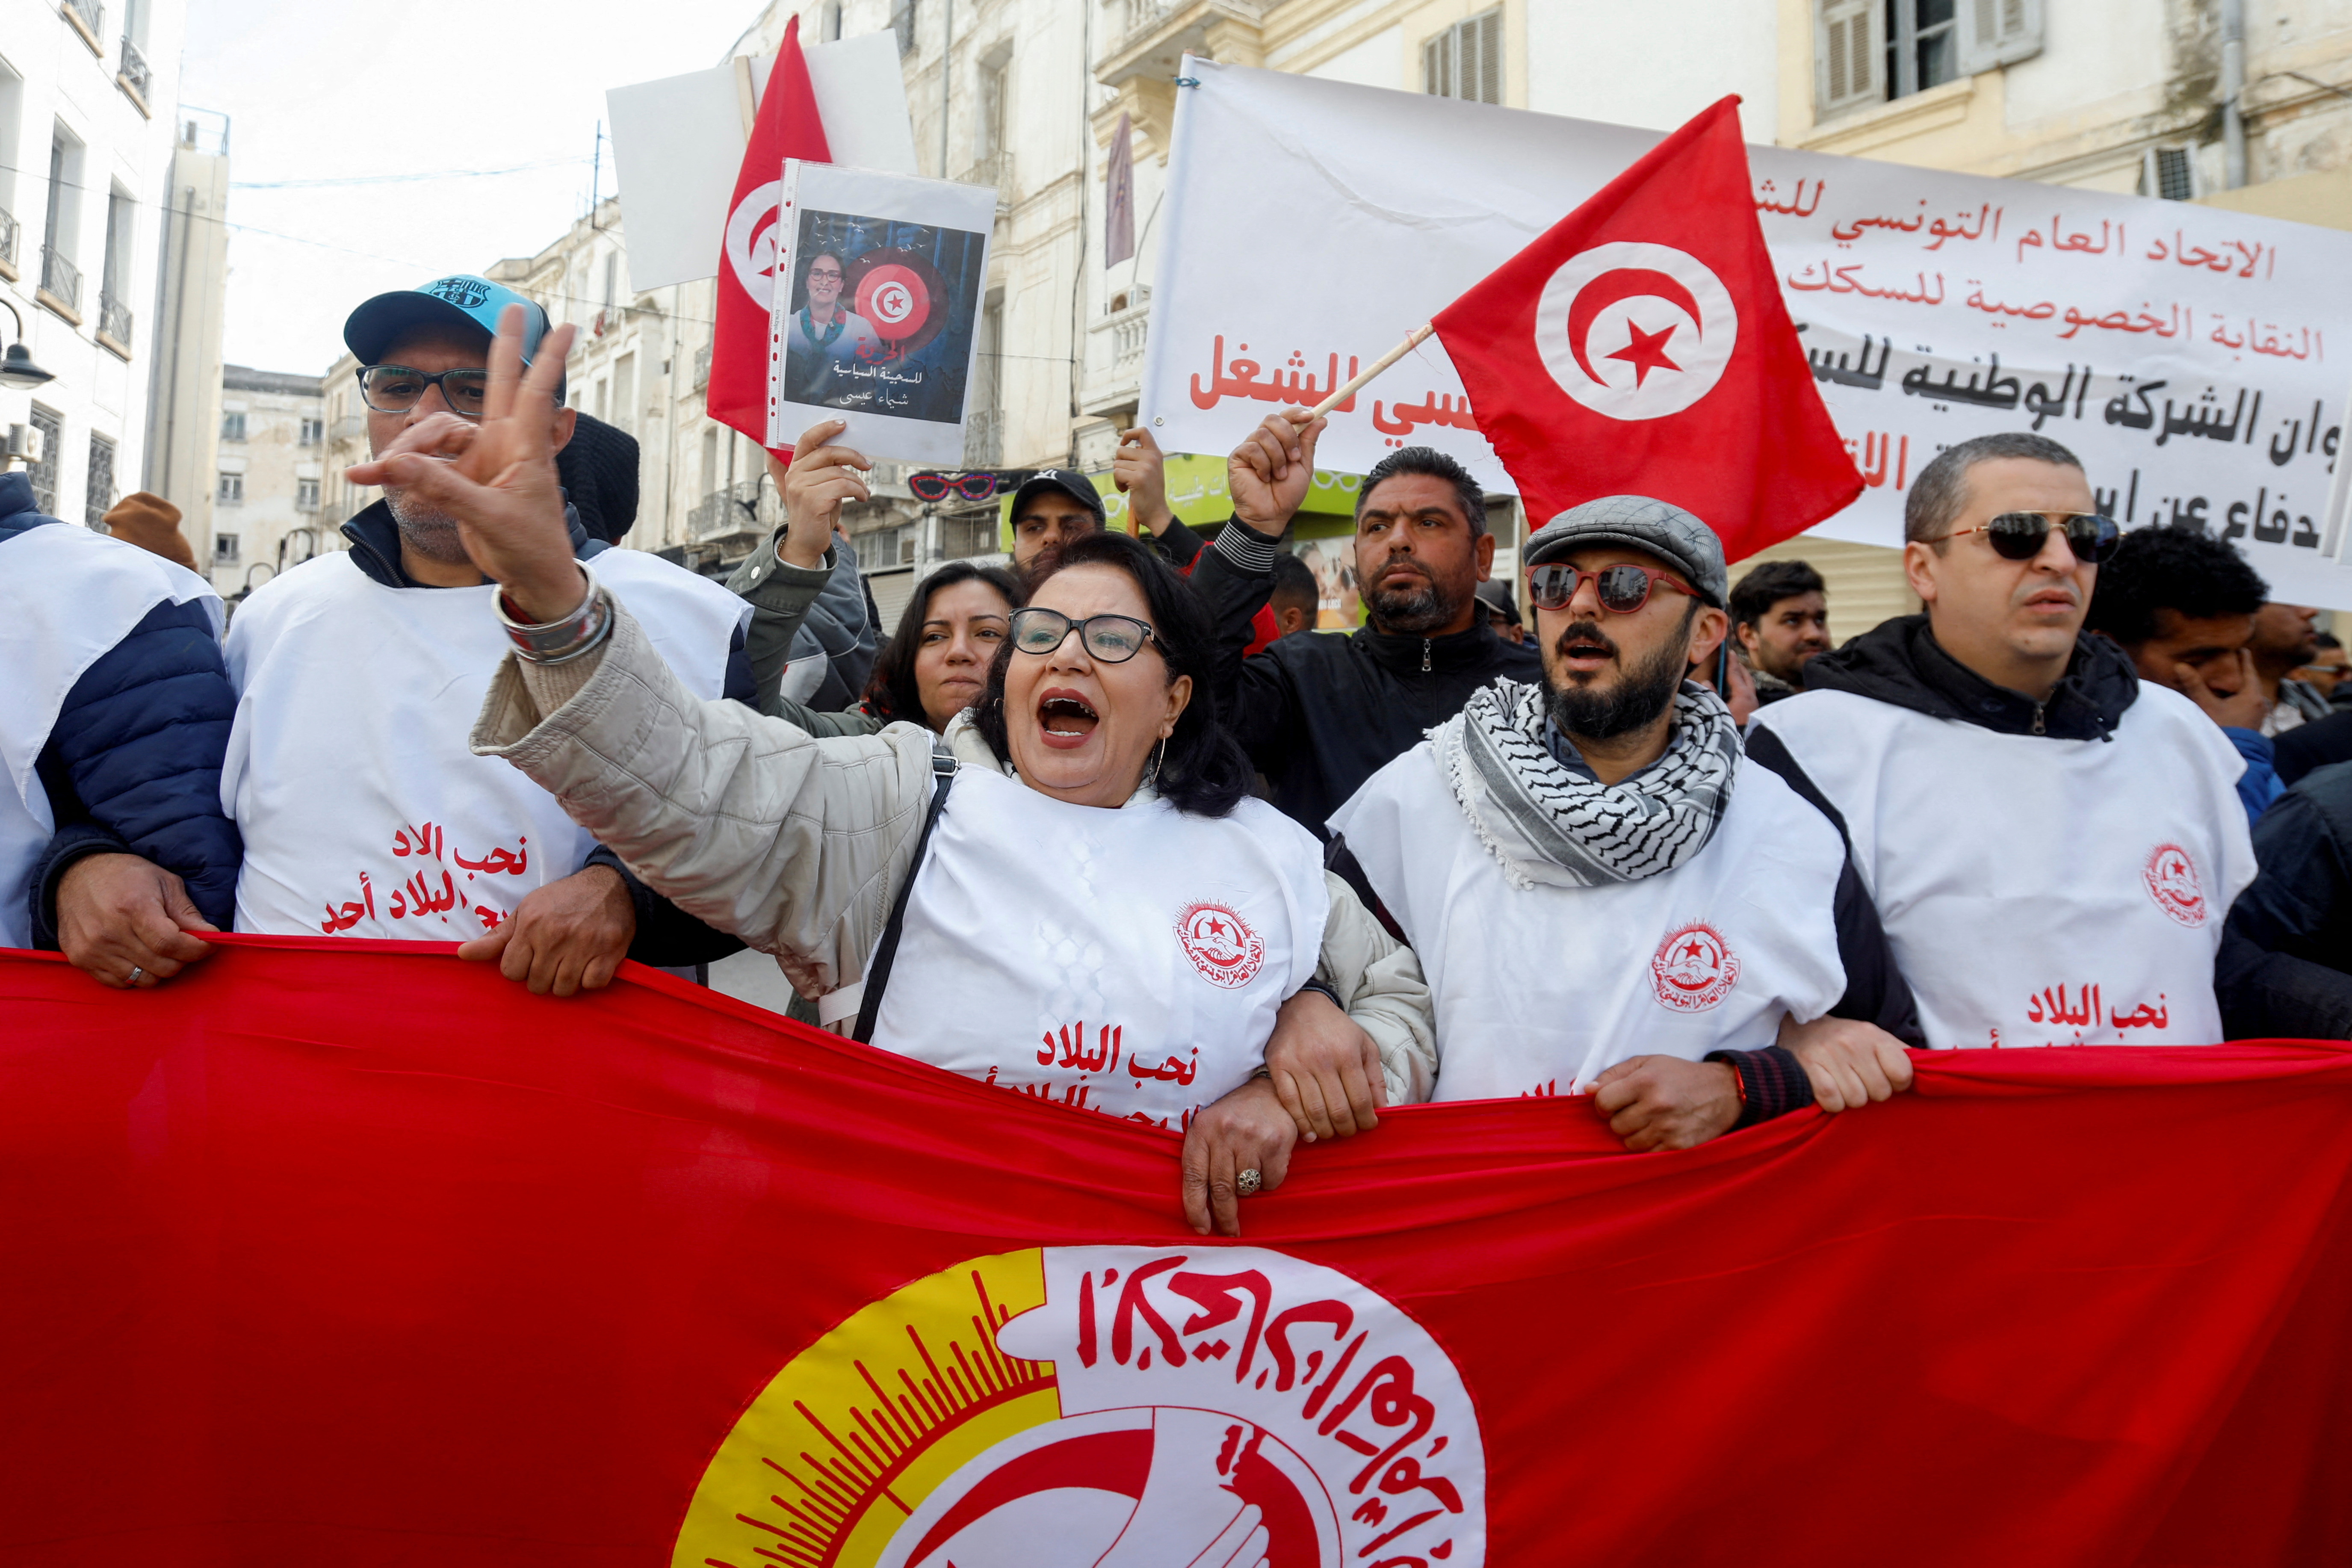 L'Union européenne prête à envoyer 900 millions d'euros à la Tunisie pour qu'elle continue de lutter contre l'immigration